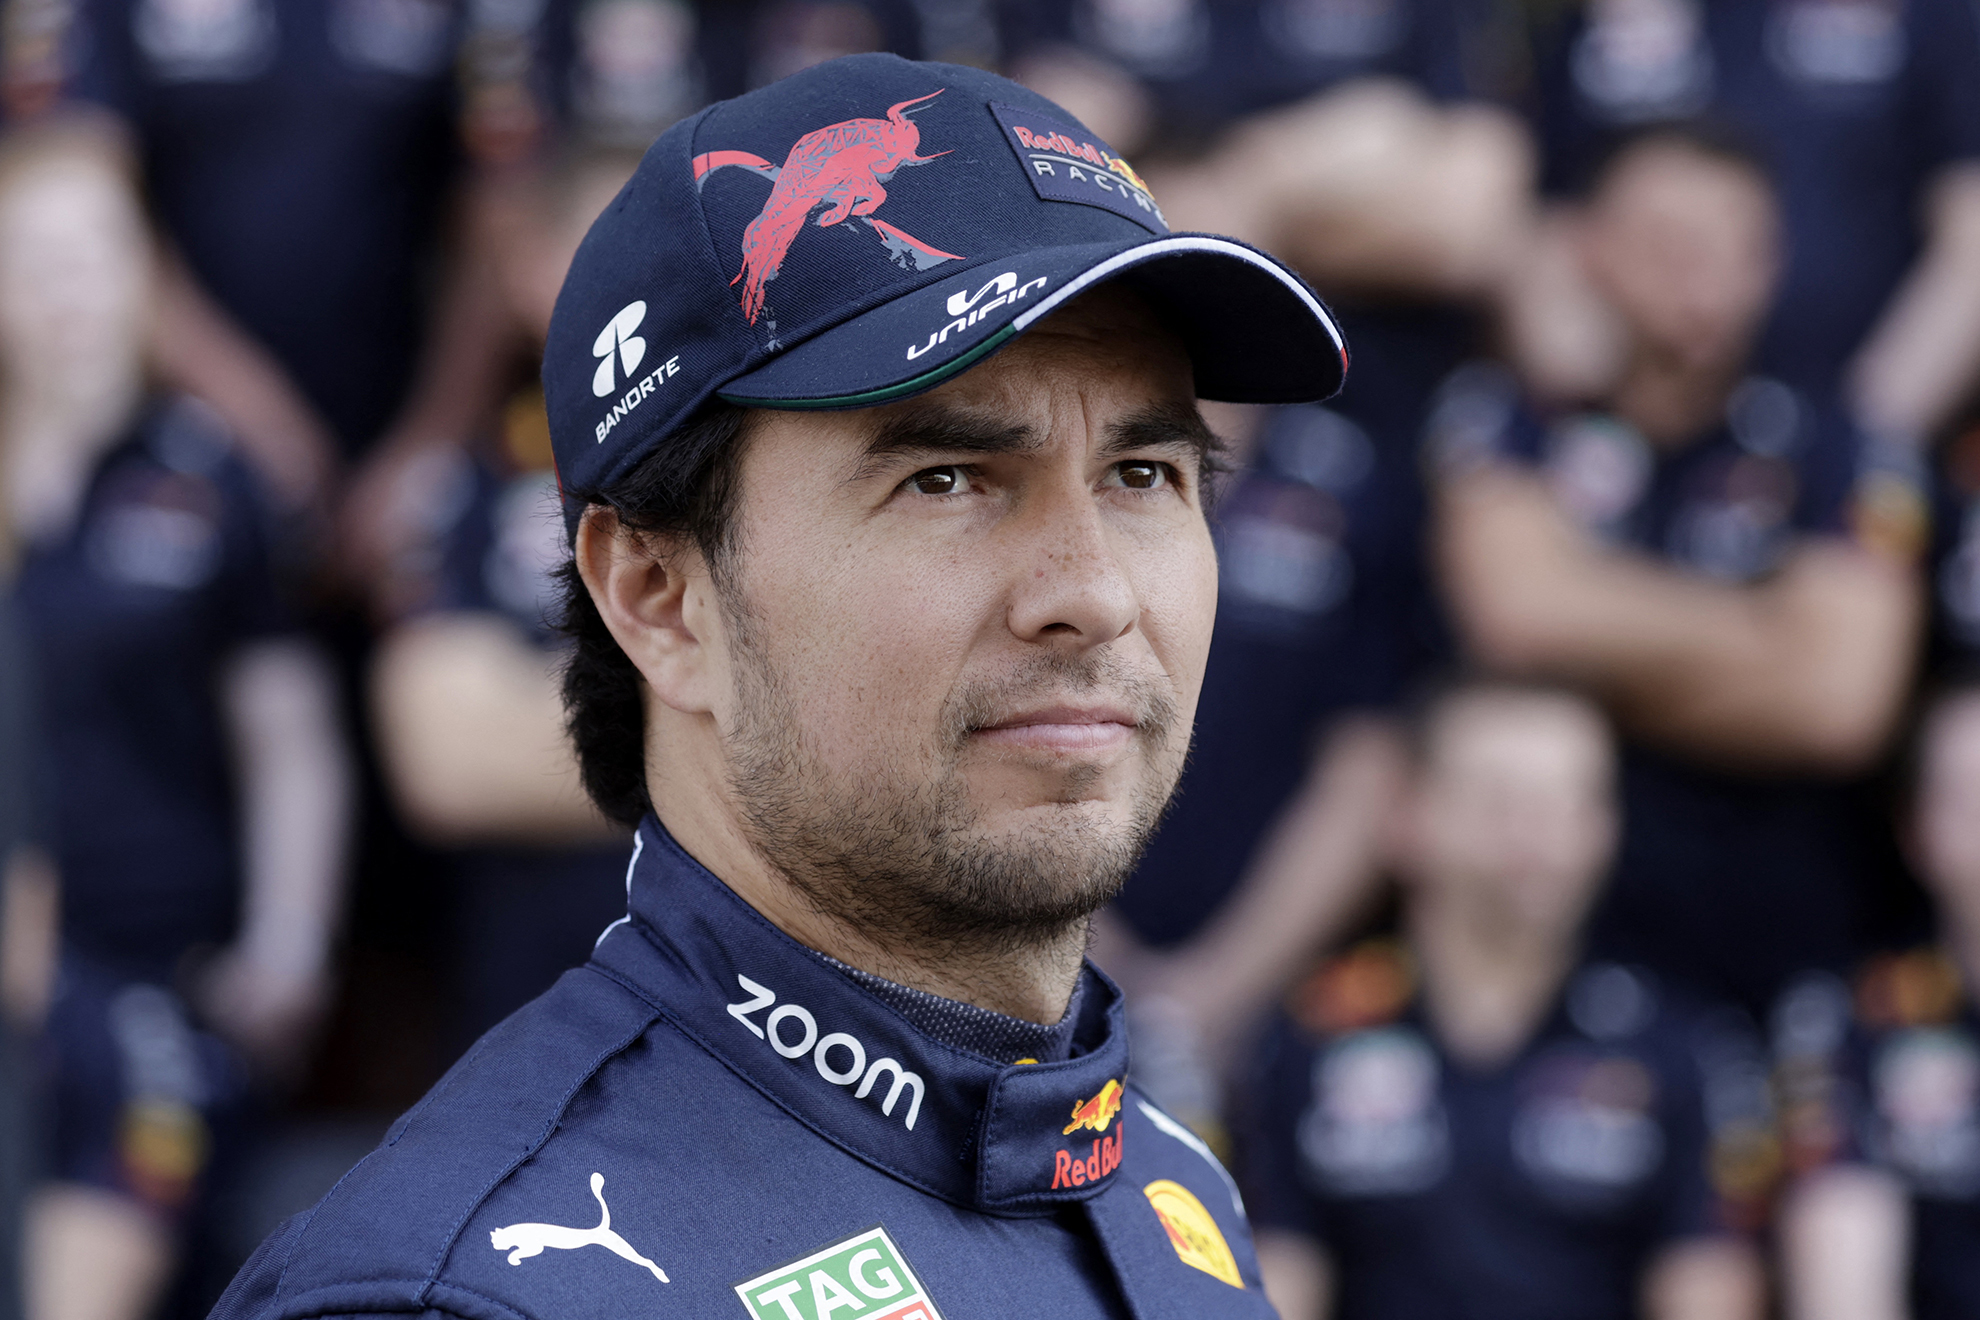 Checo espera cerrar con broche de oro su mejor temporada en su estancia en la F1 | Reuters